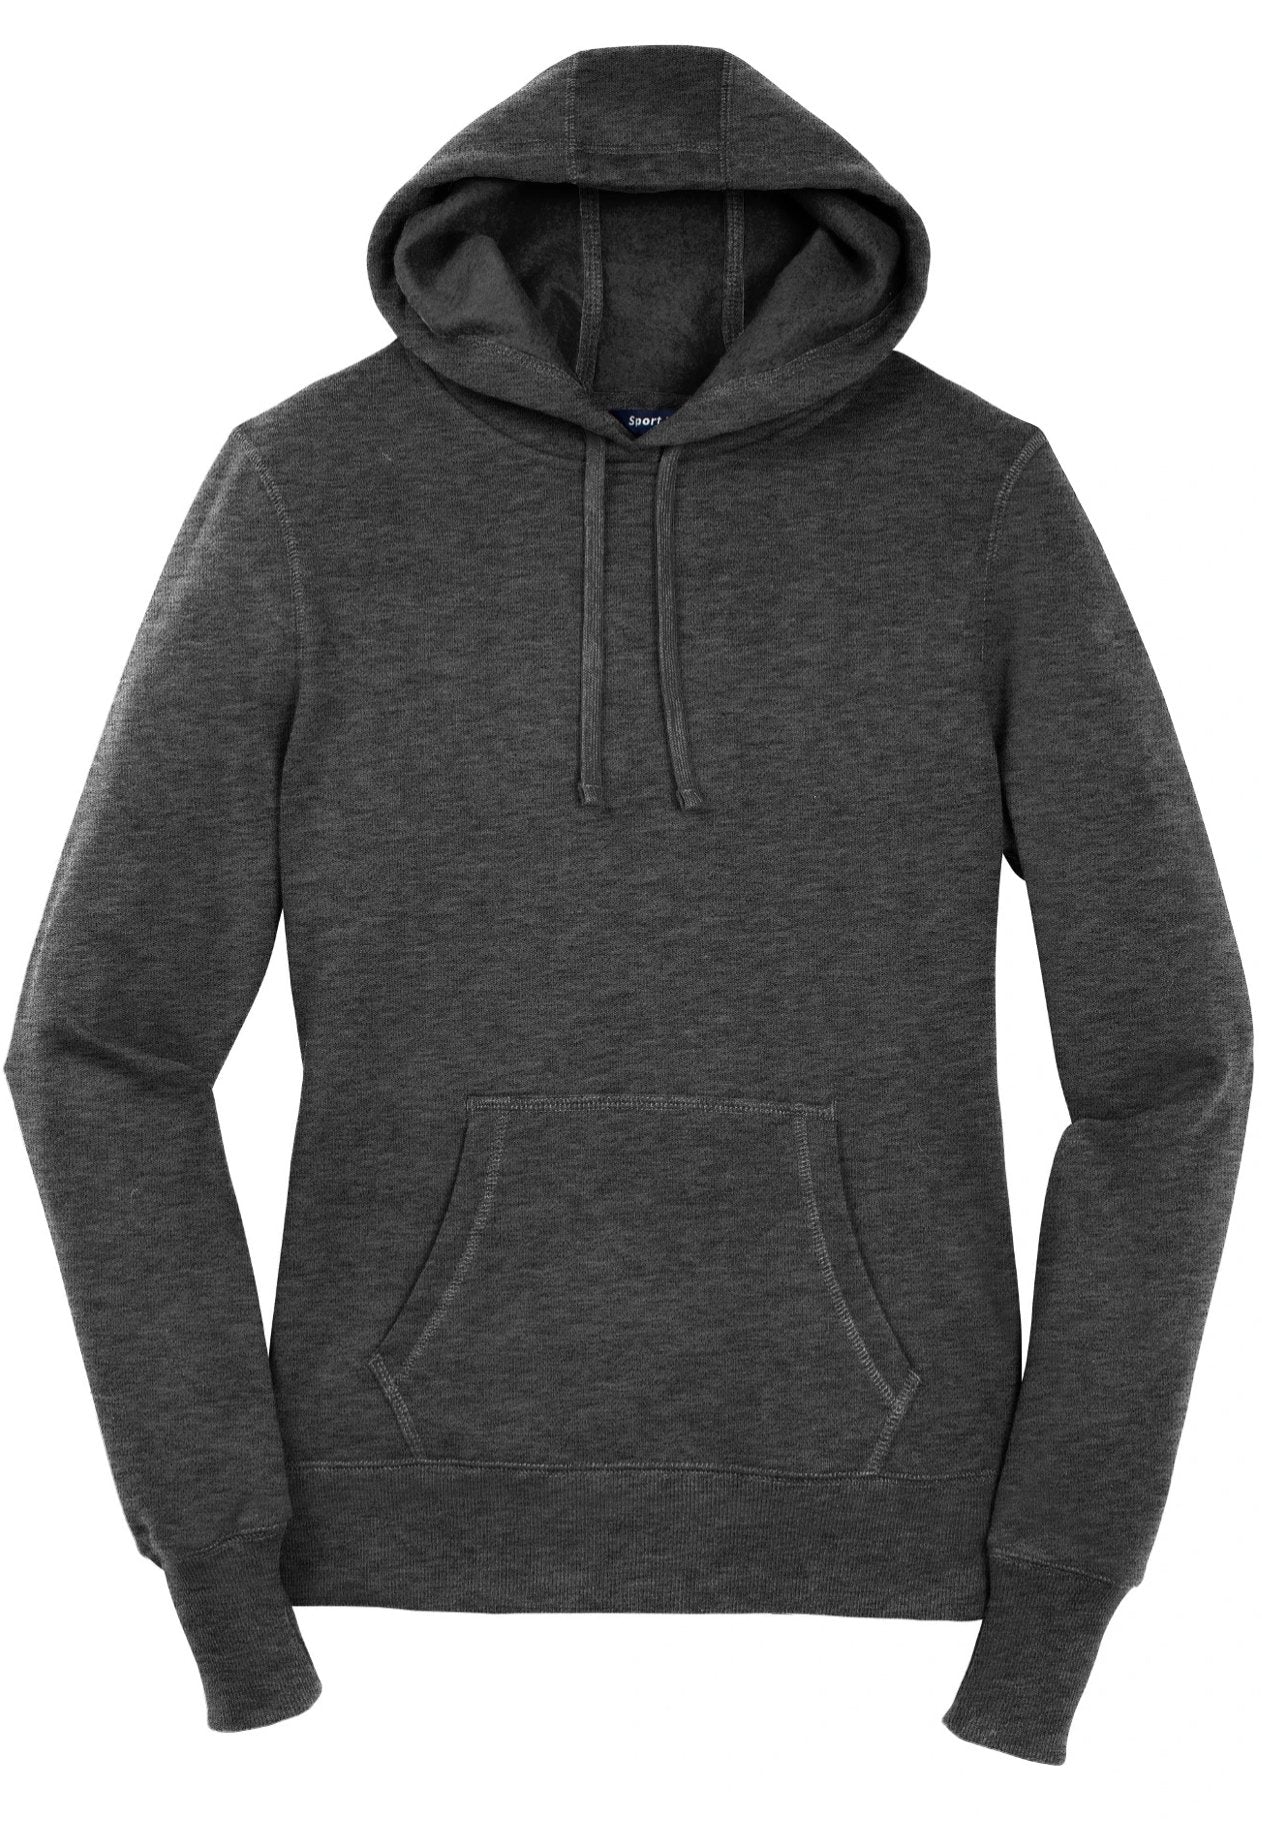 Sport-Tek® Ladies Pullover Hooded Sweatshirt